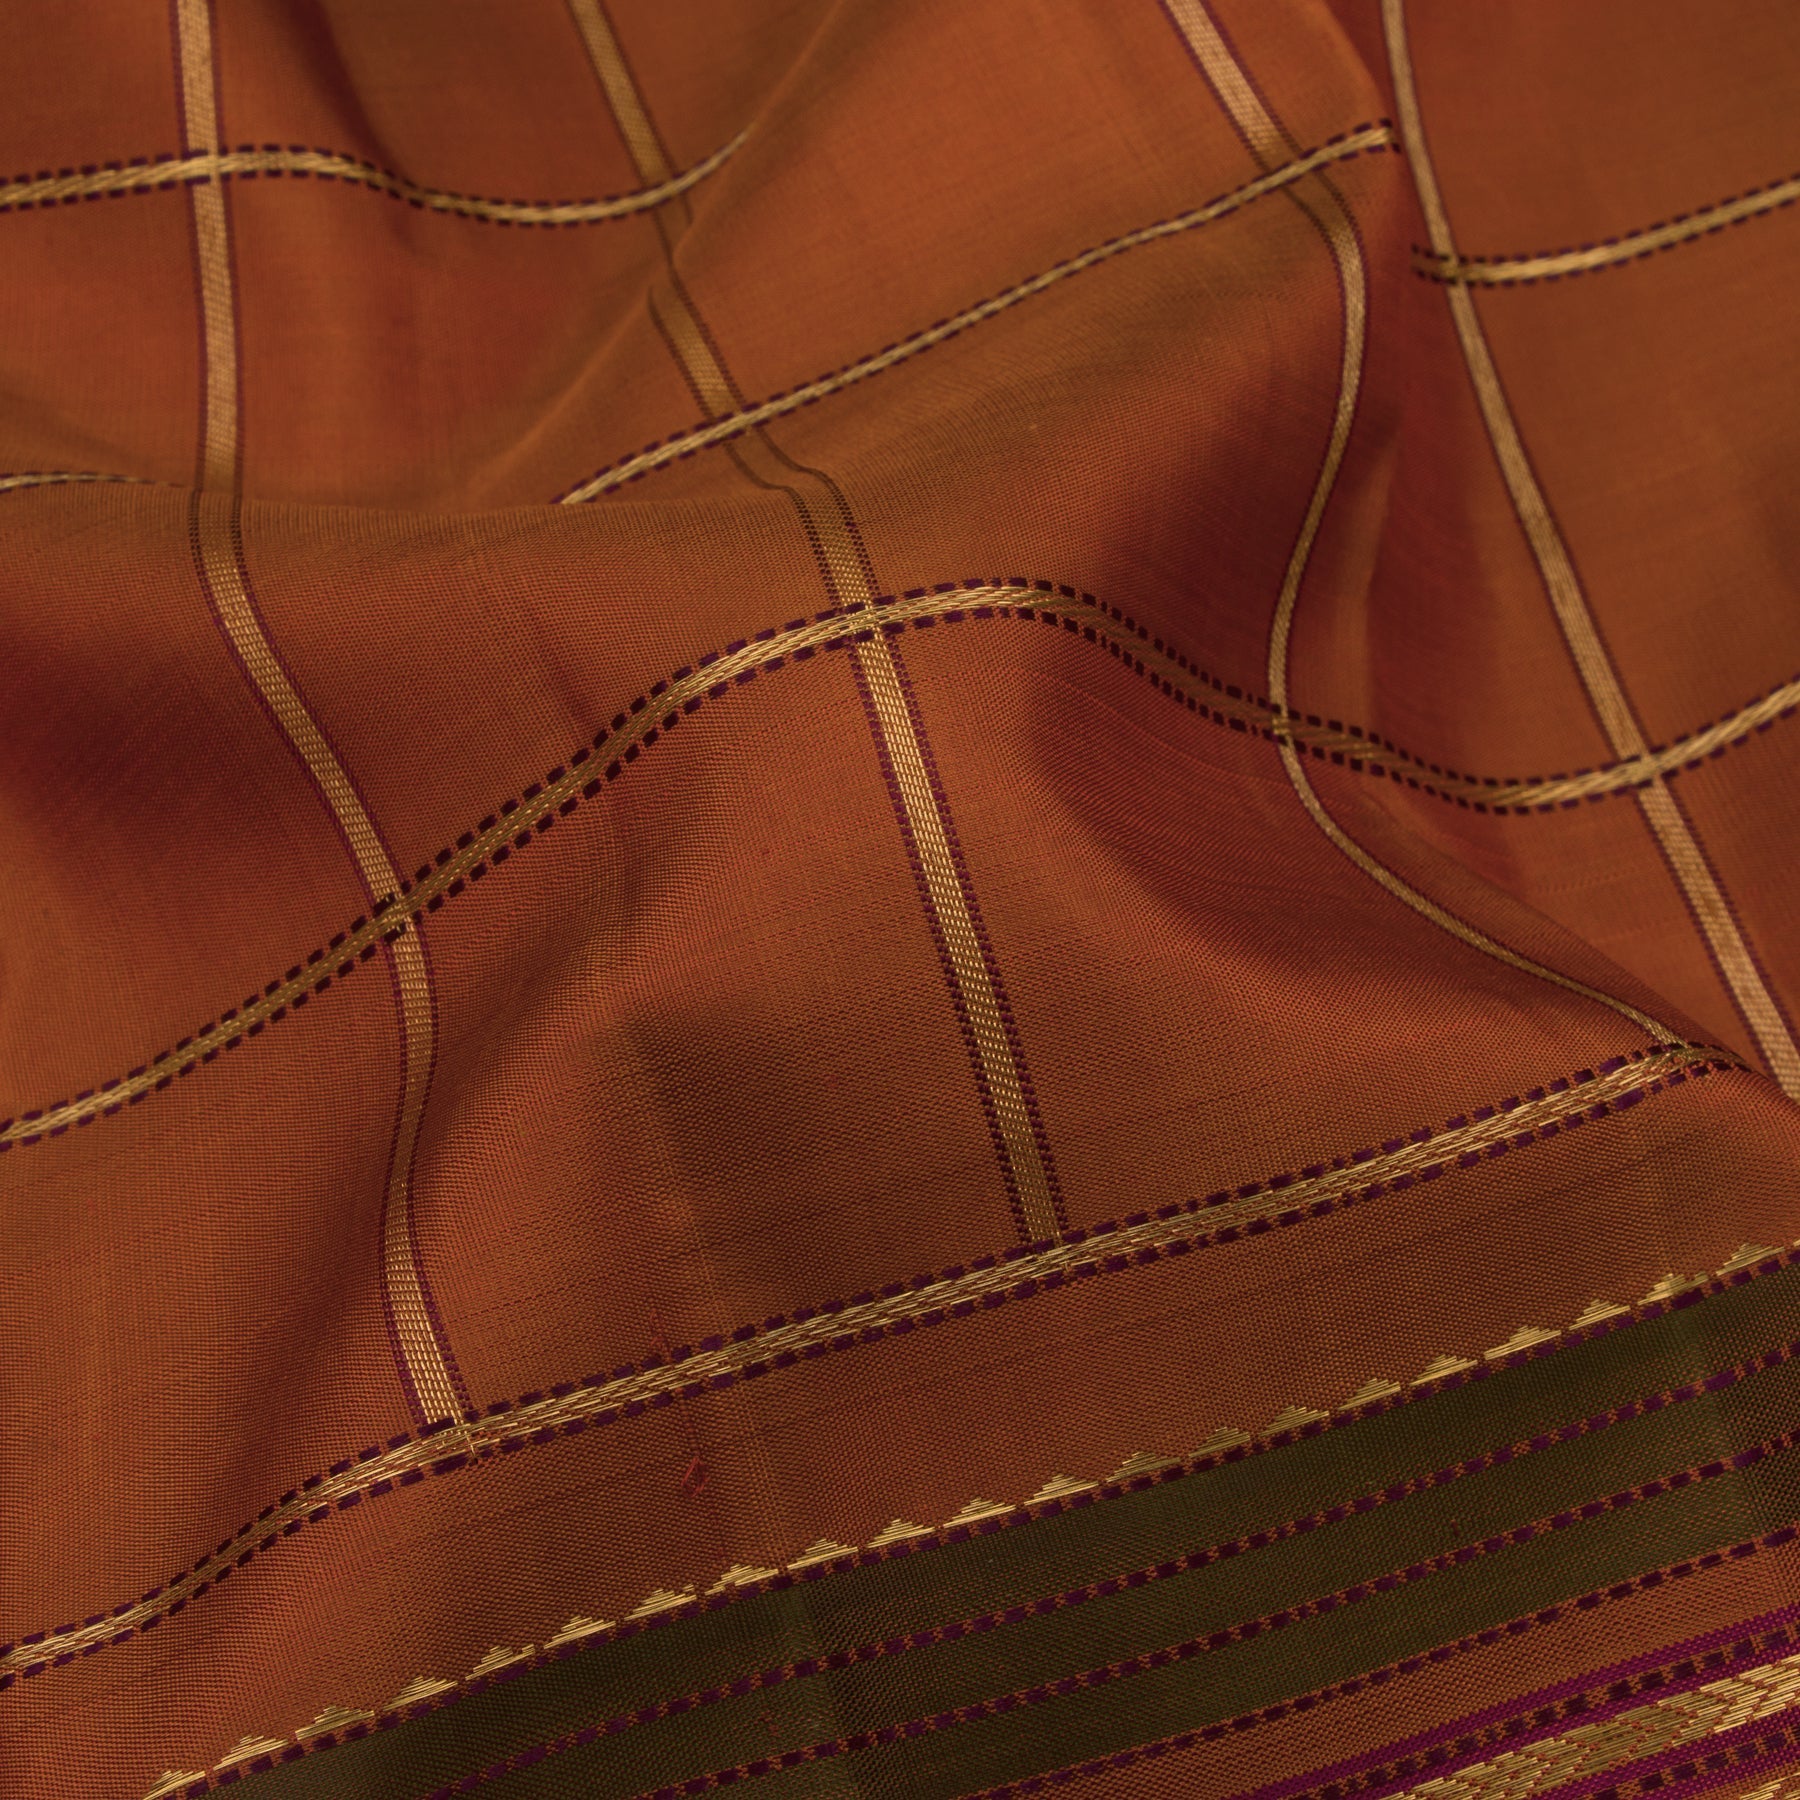 Kanakavalli Kanjivaram Silk Sari 22-040-HS001-13550 - Fabric View